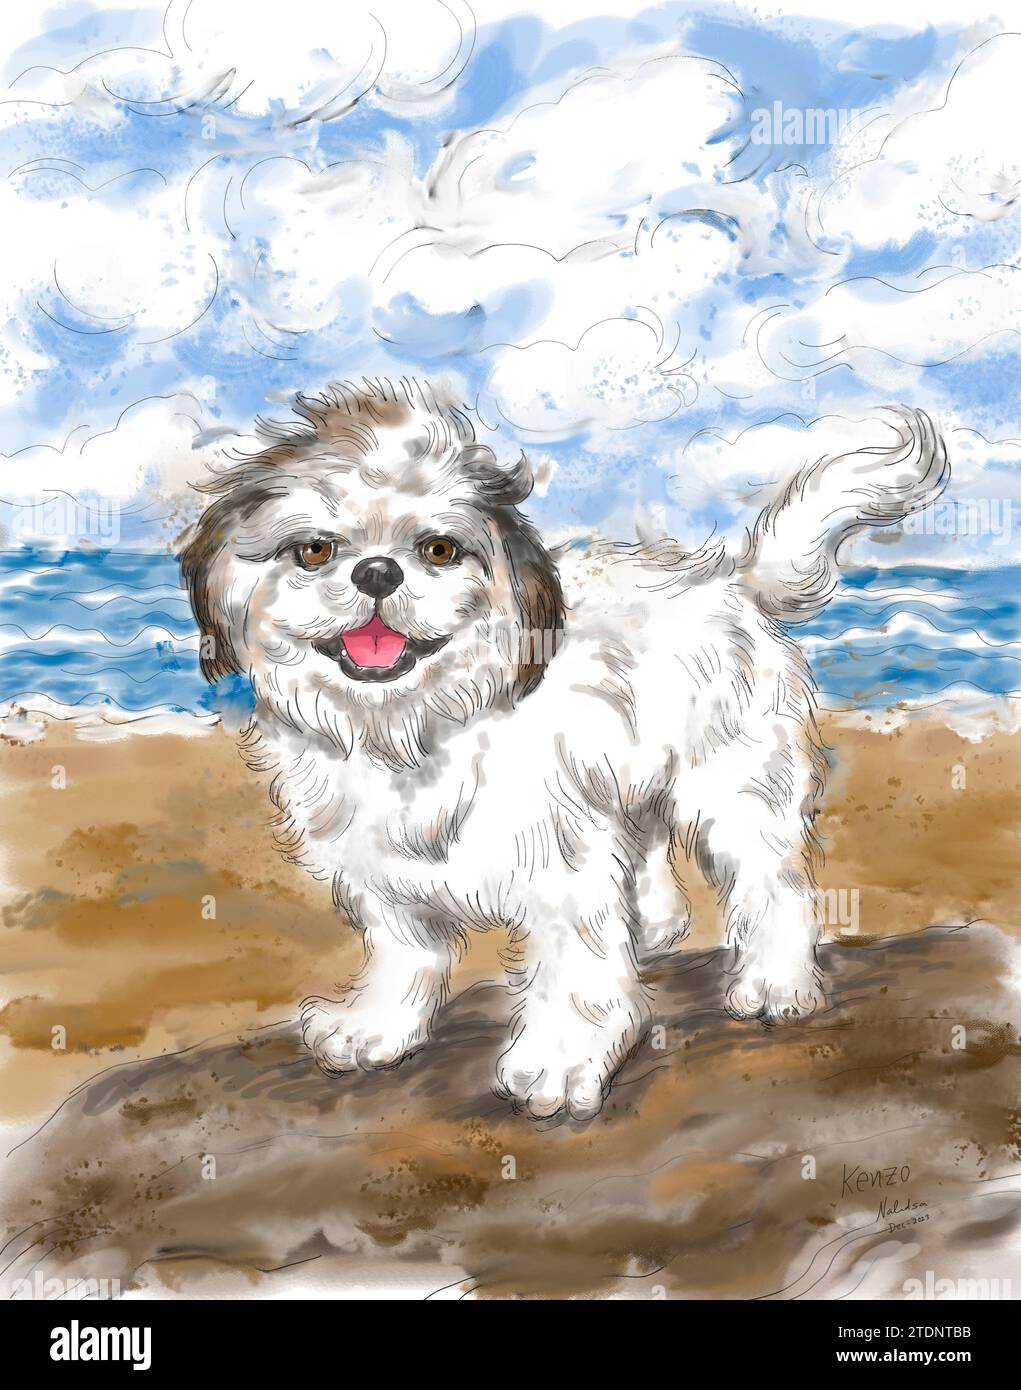 Portrait de chien d'un jeune Shih Tzu avec plage à l'extérieur en saison estivale. Peinture à l'aquarelle. Concept d'animal de compagnie. Banque D'Images